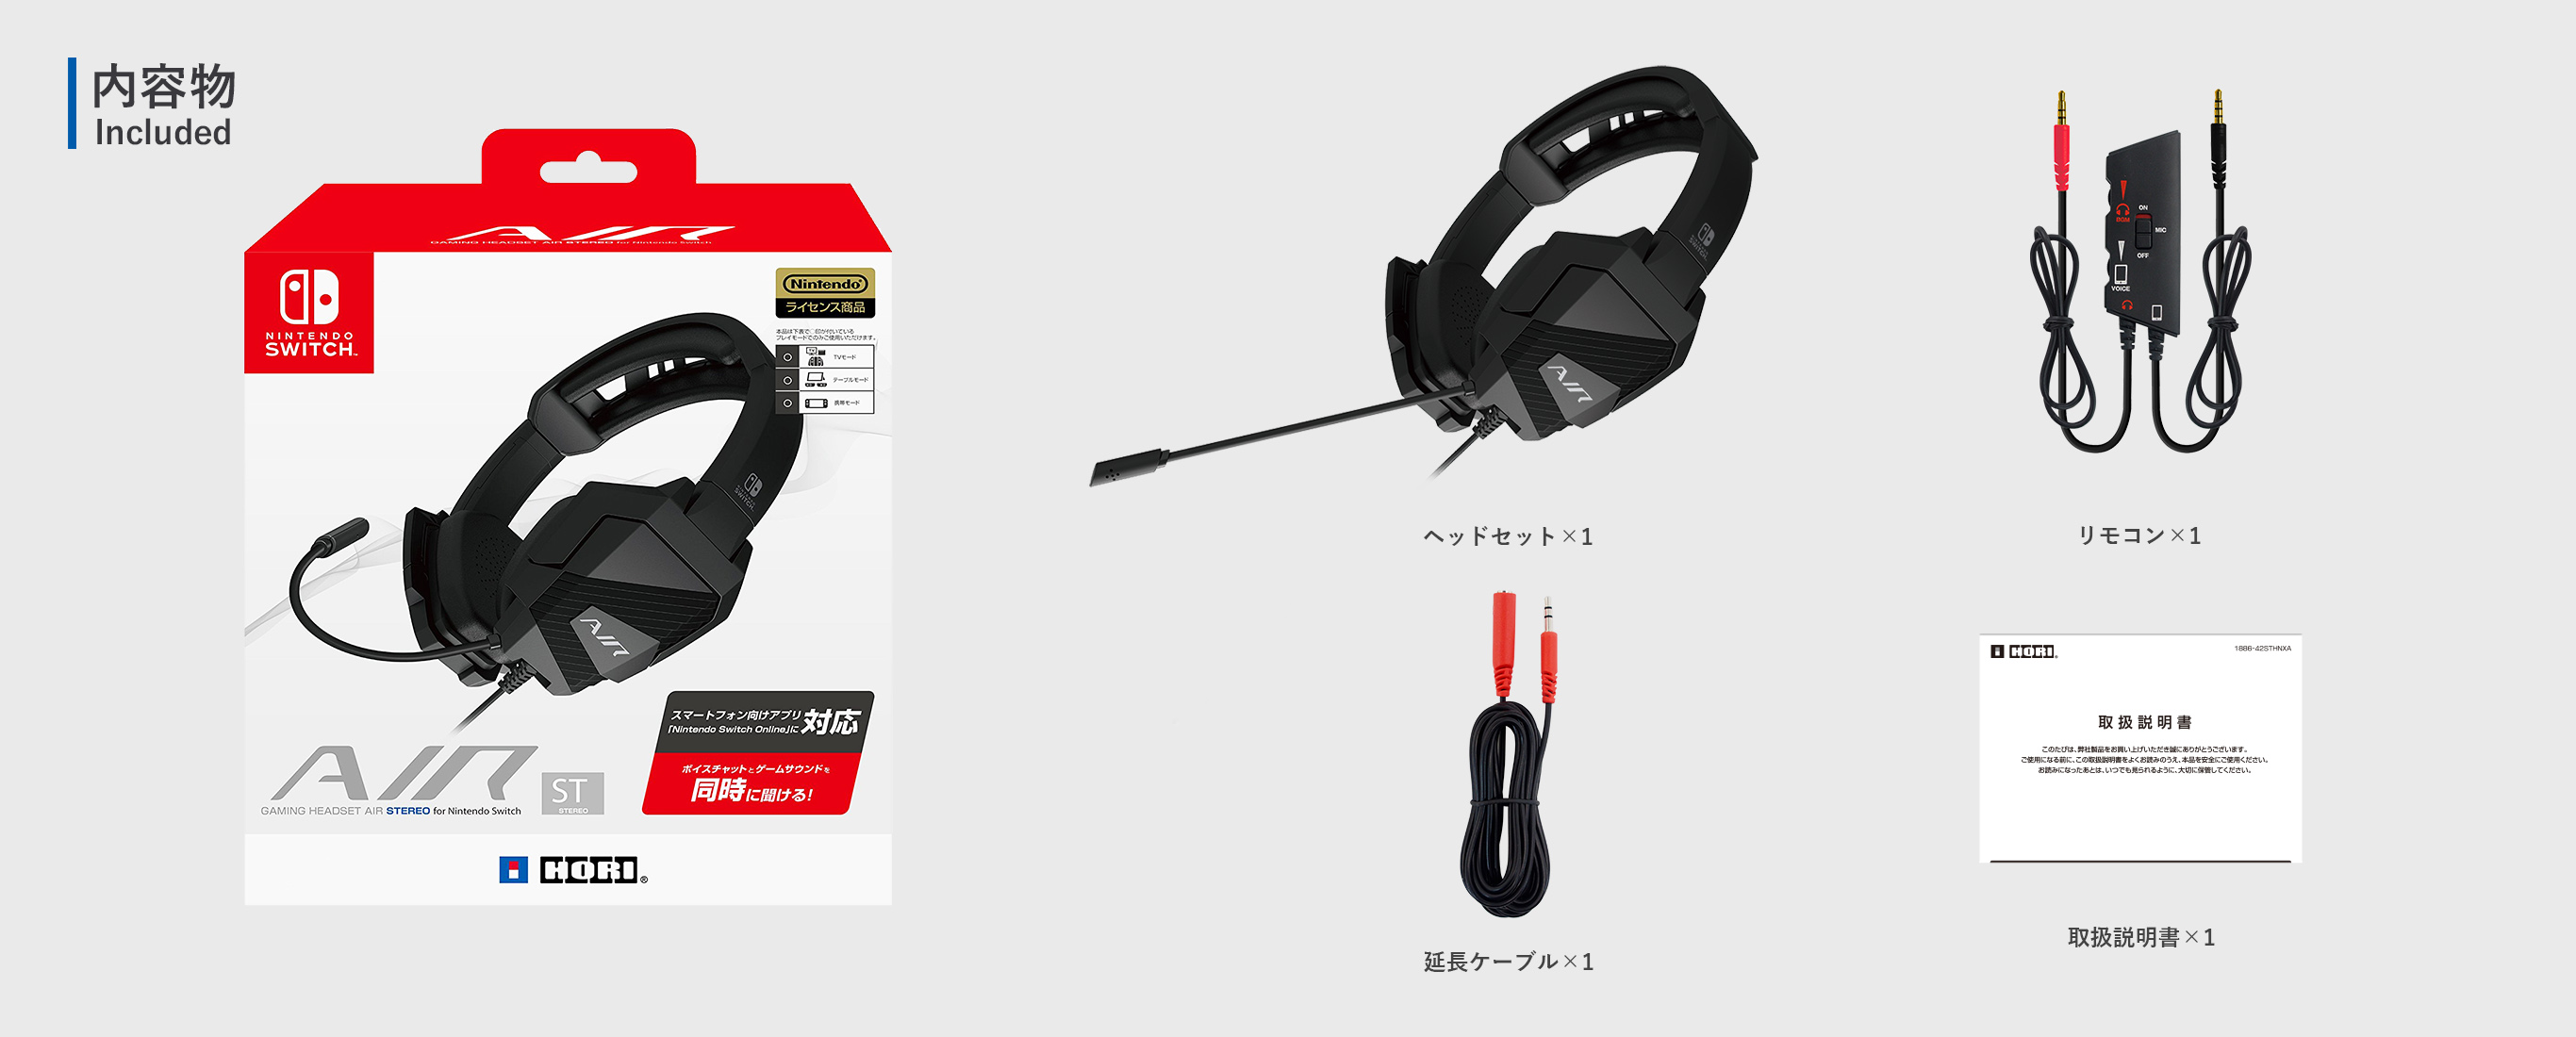 株式会社 HORI | ゲーミングヘッドセットAIR STEREO for Nintendo Switch